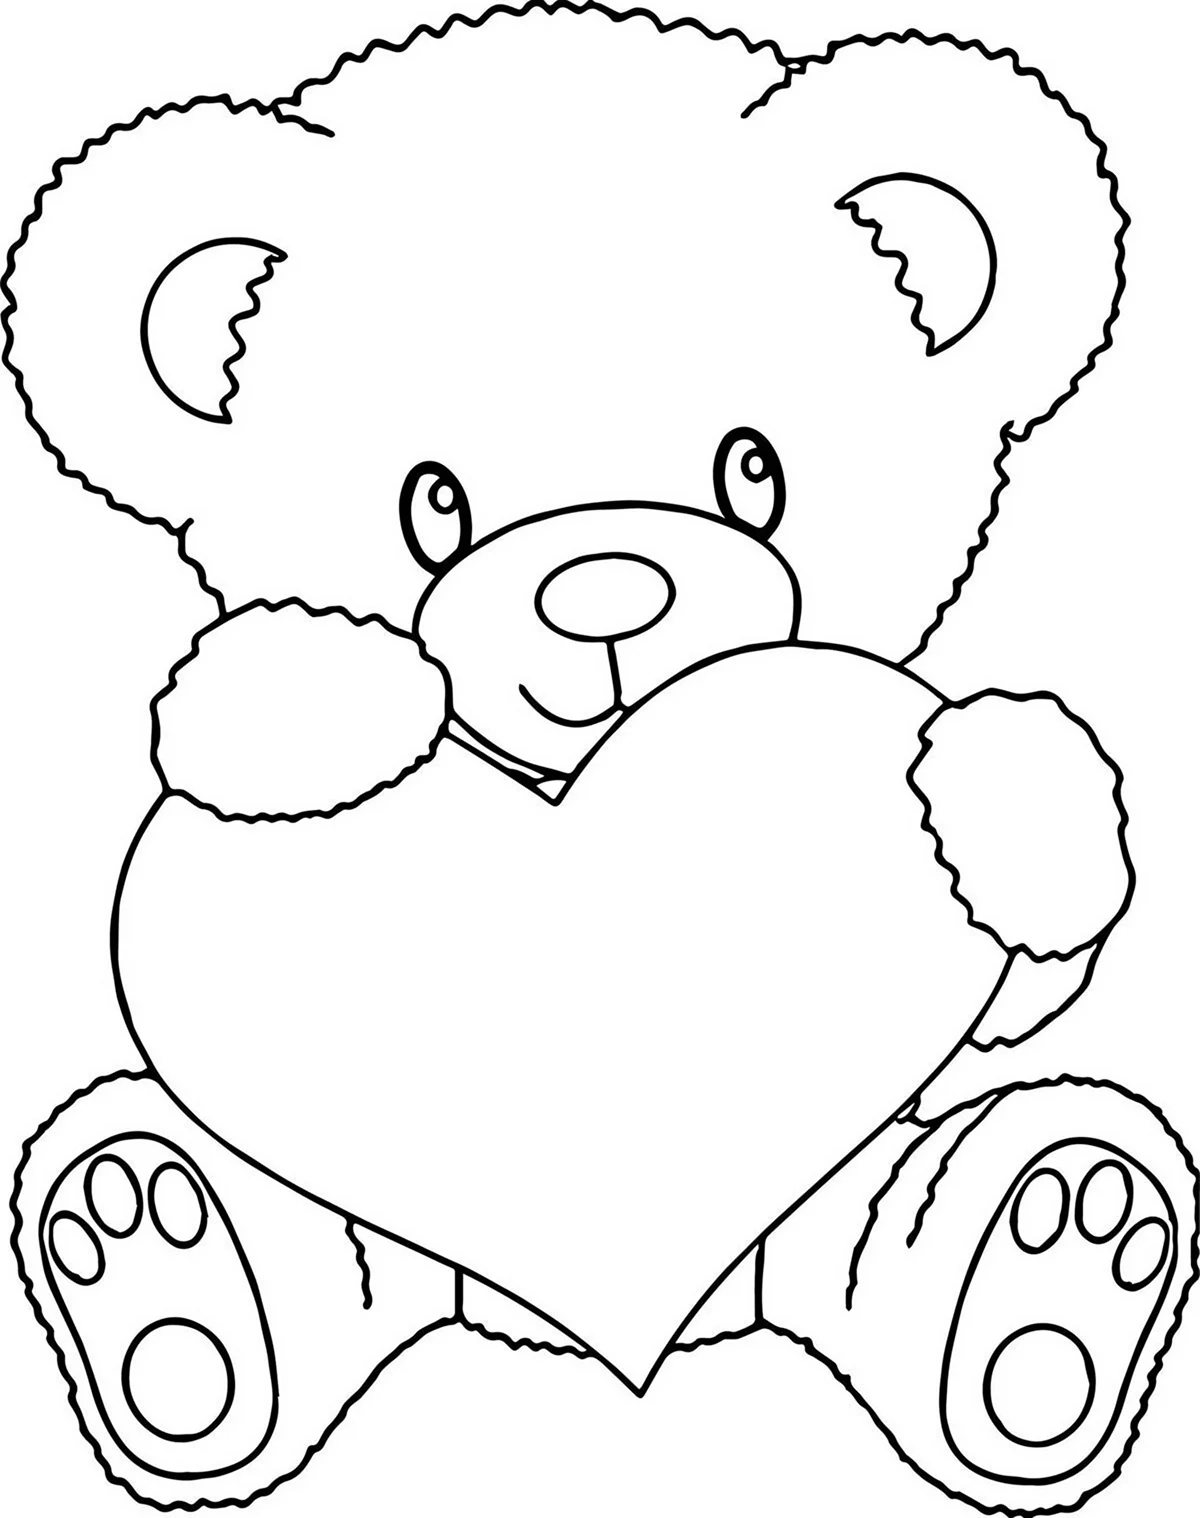 Раскраска Медвежонок с сердечком. Для срисовки